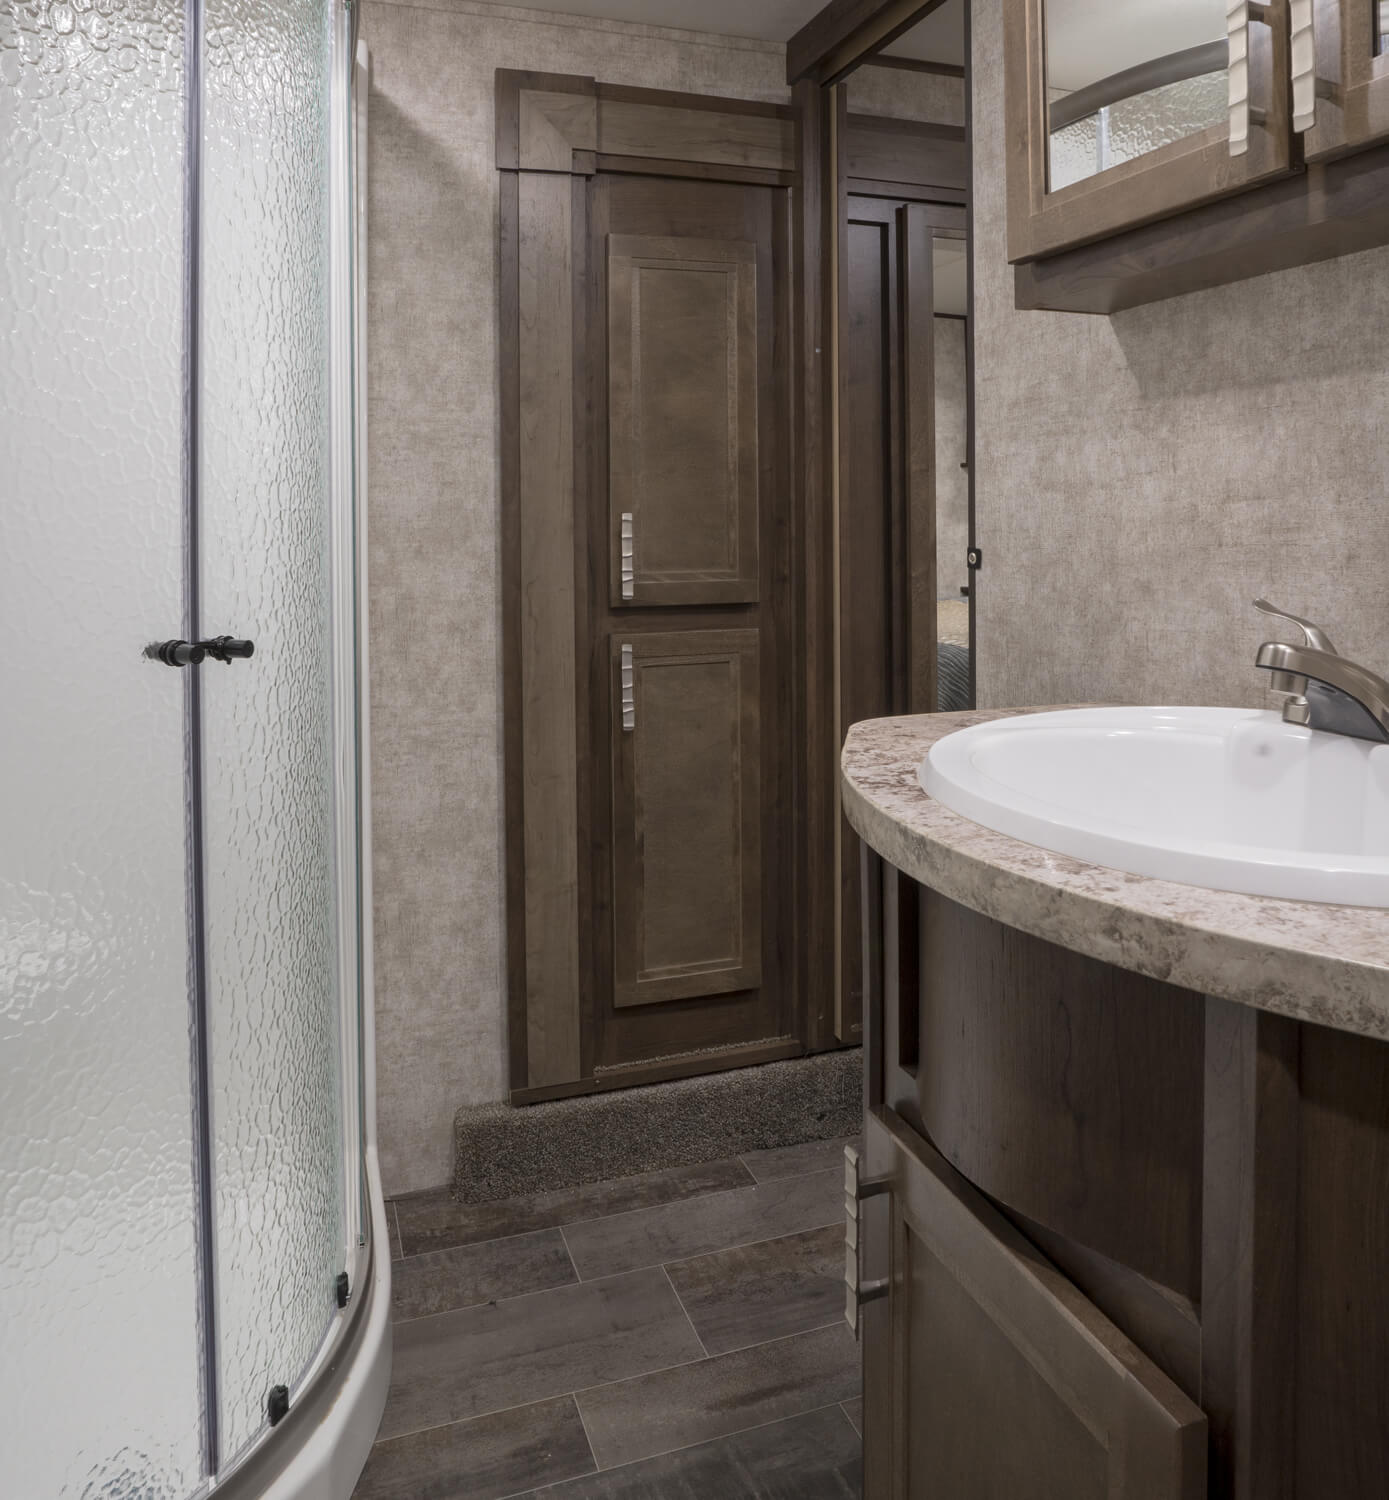 Highlander 327G Bathroom Shower and Vanity